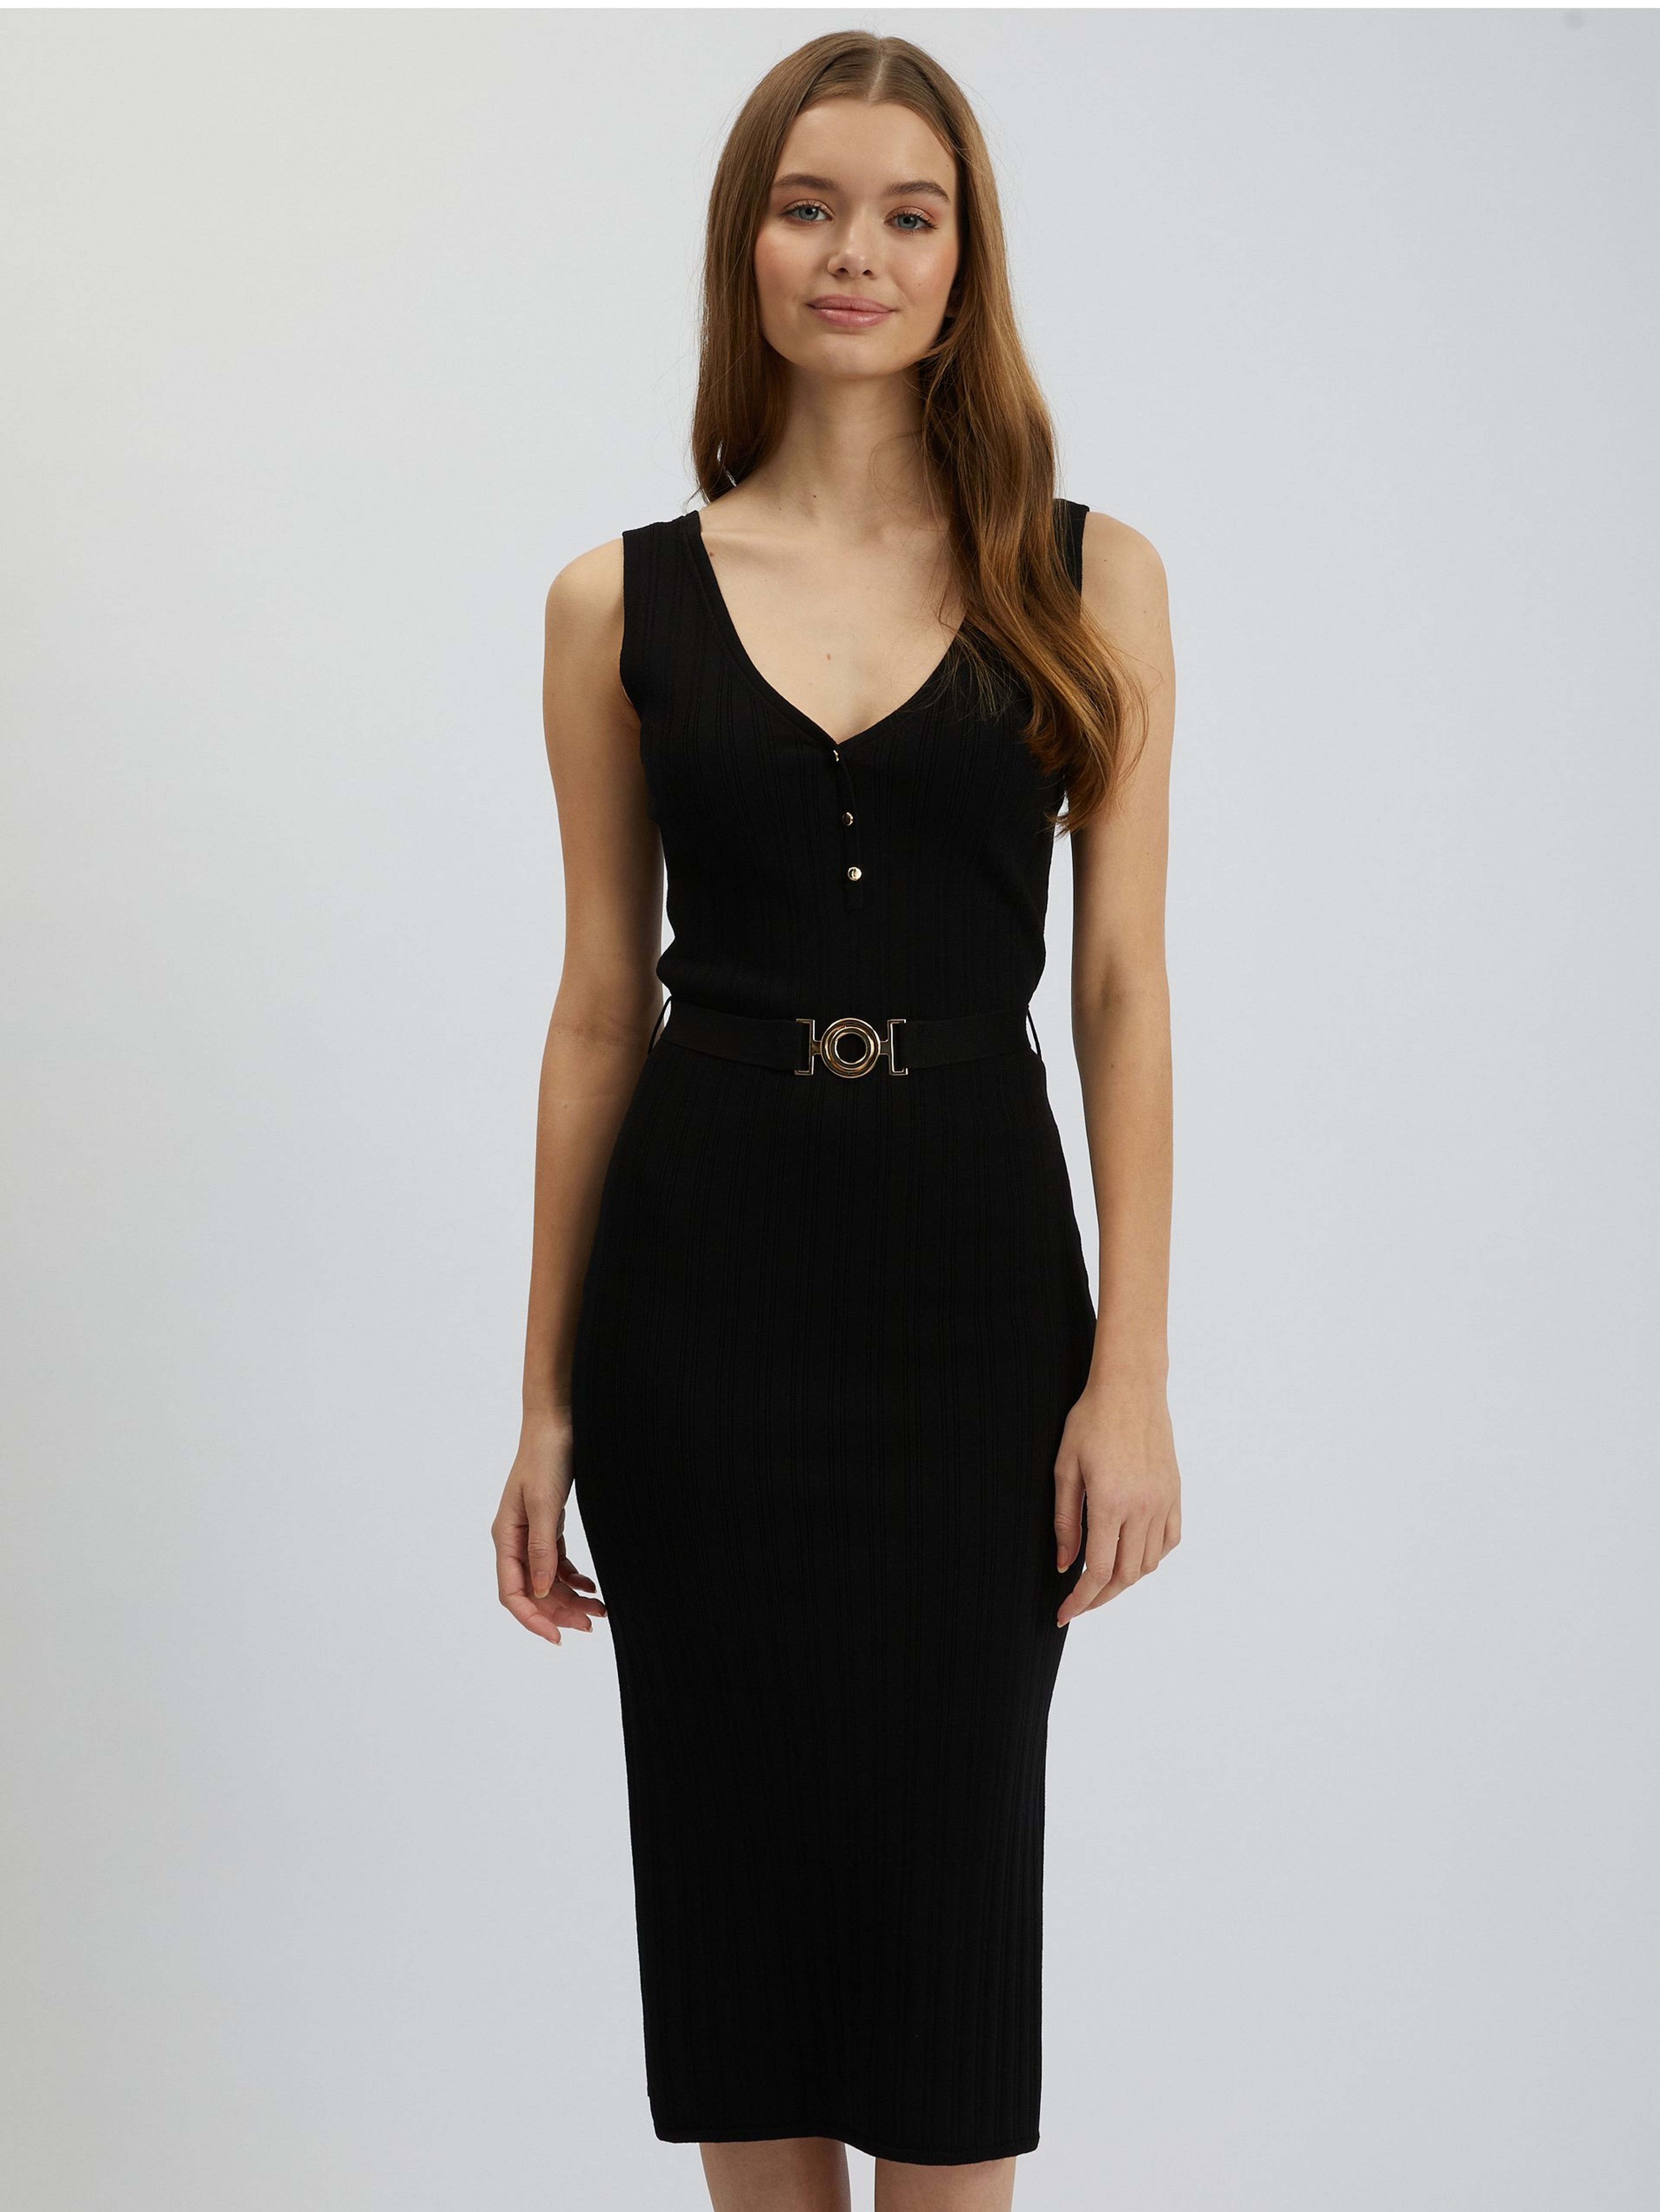 Černé dámské svetrové šaty ORSAY